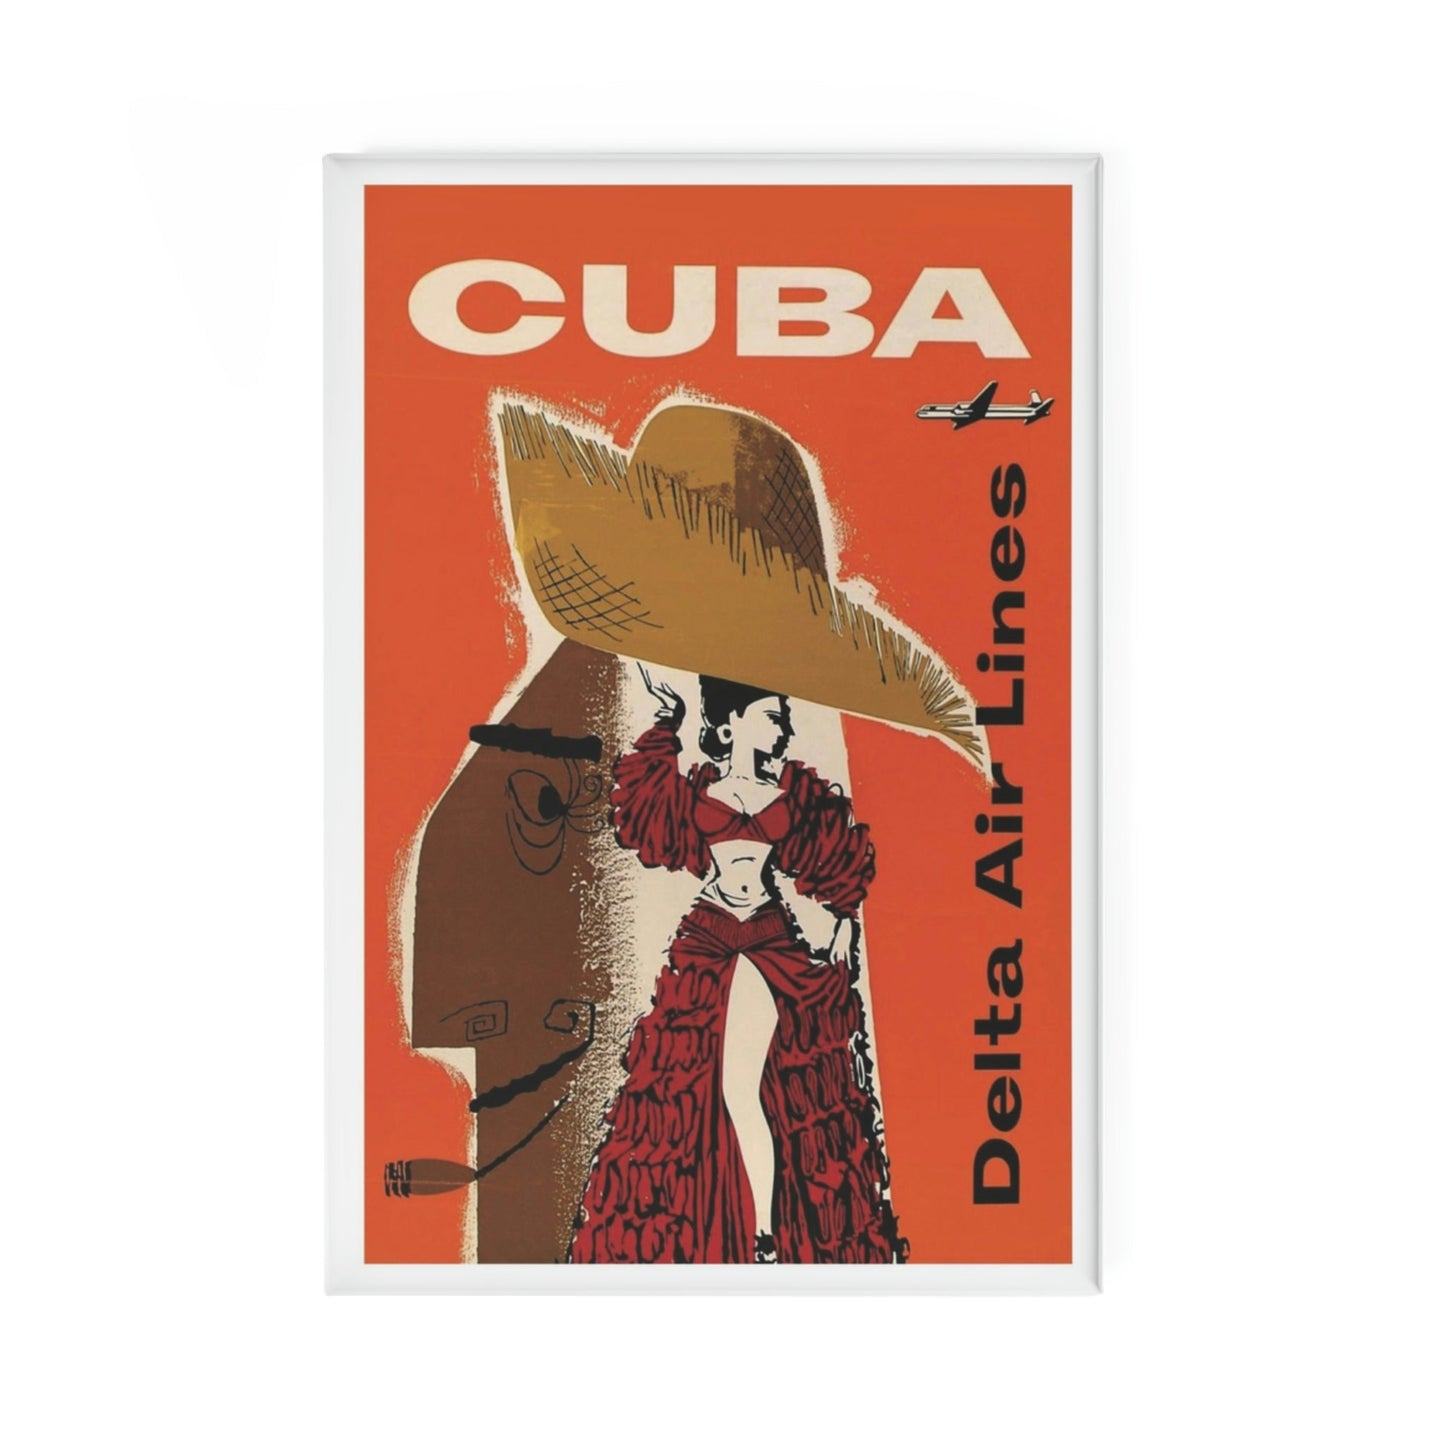 Aimant Cuba Delta Air Lines